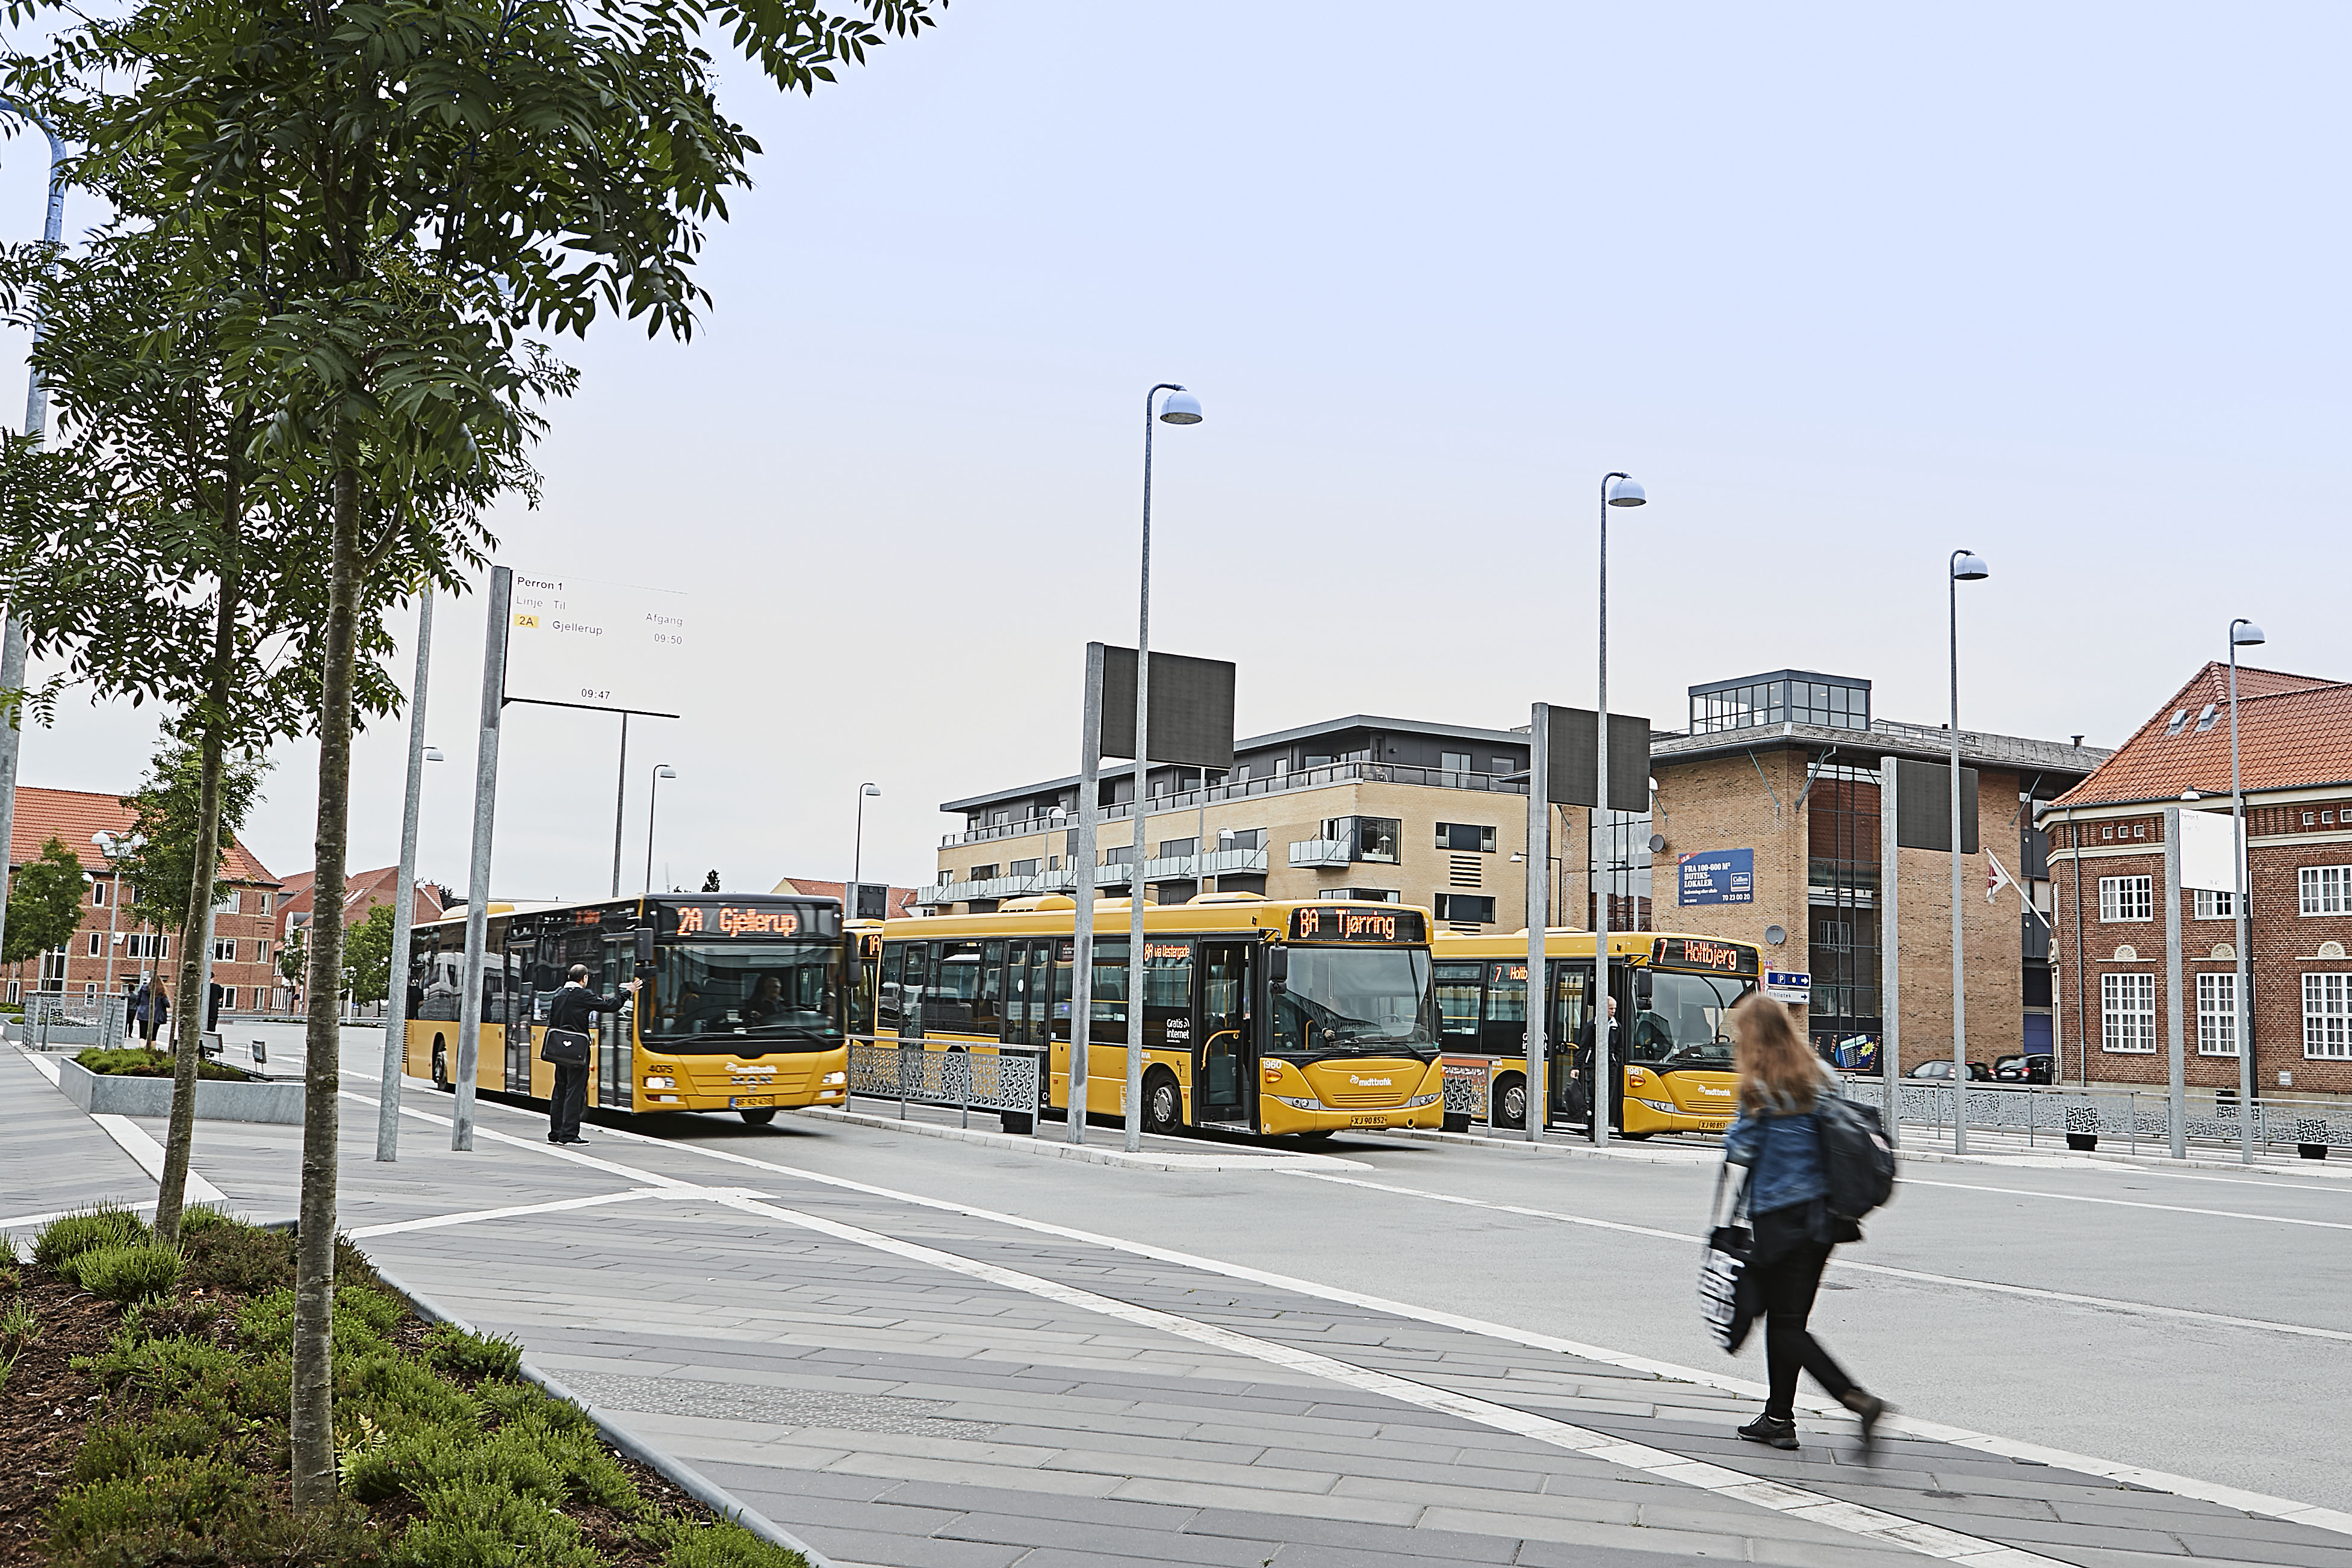 Billede af busterminal I Herning med tre gule bybusser, kunder og chauffører.